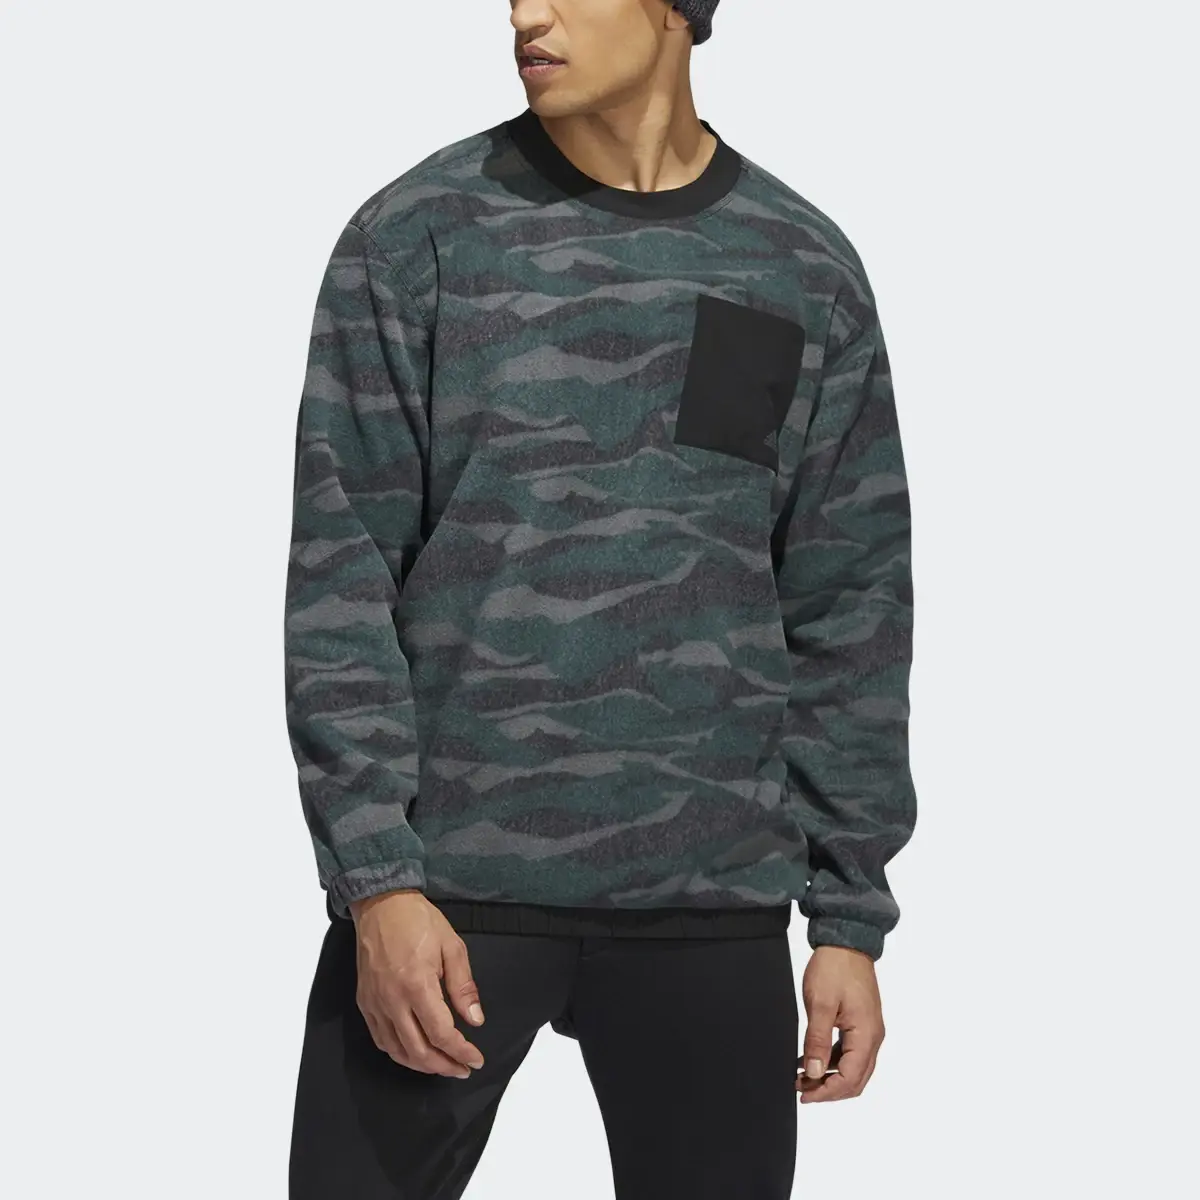 Adidas Sweatshirt. 1